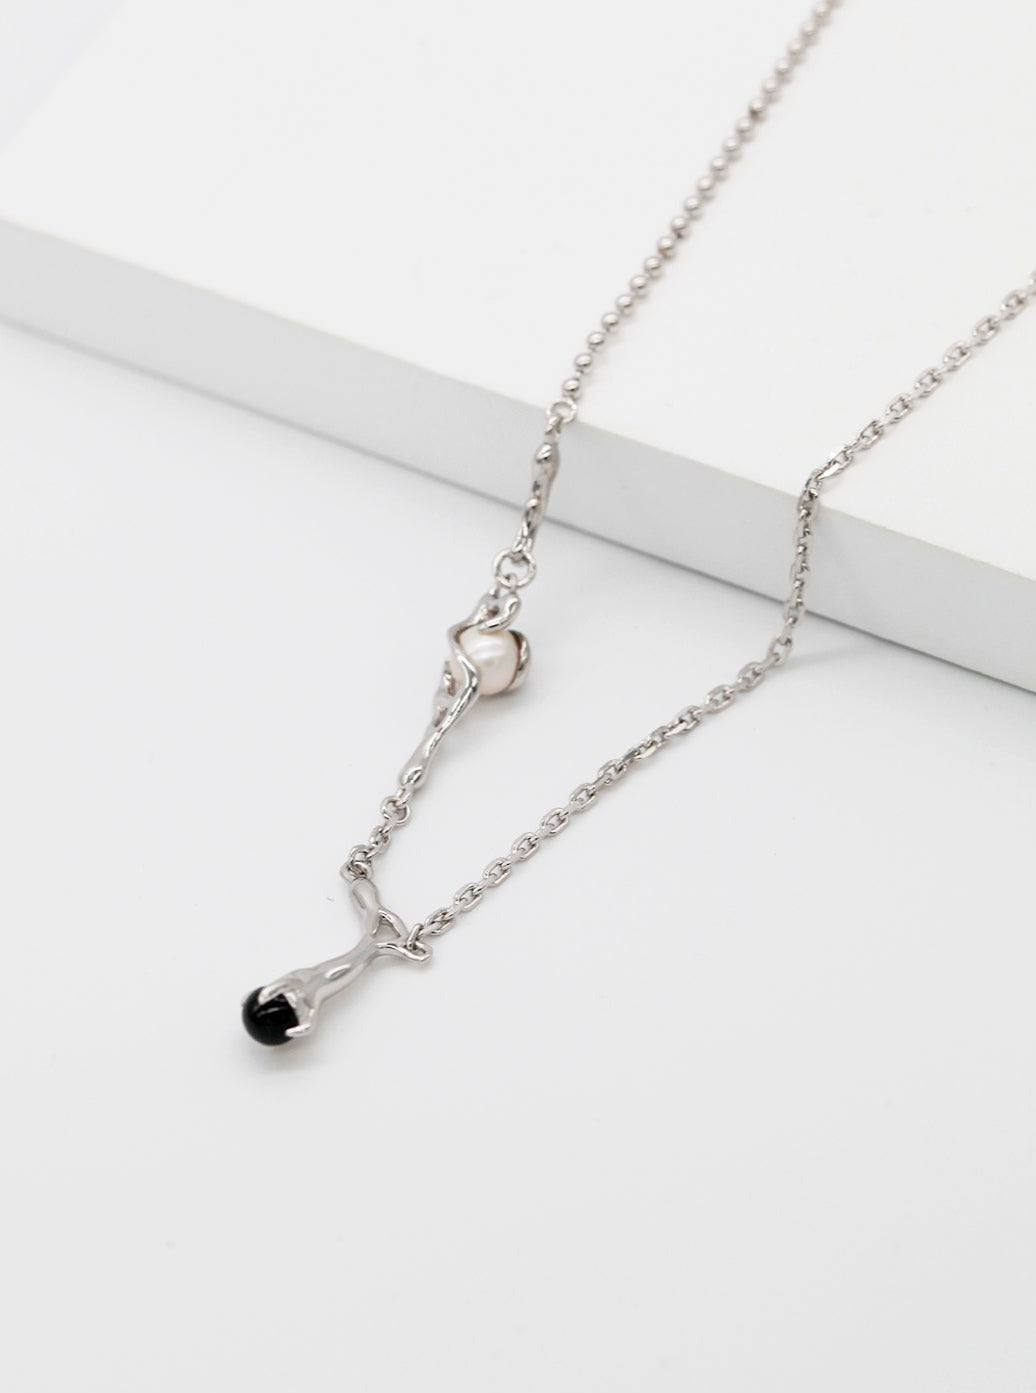 Branch Pendant Chain Necklace | necklaces | 925necklace, _badge_S925, Chain Necklace, Gold Necklace, natural stone, necklace, Pendant Necklace, s925, simsmore | SHOPQAQ